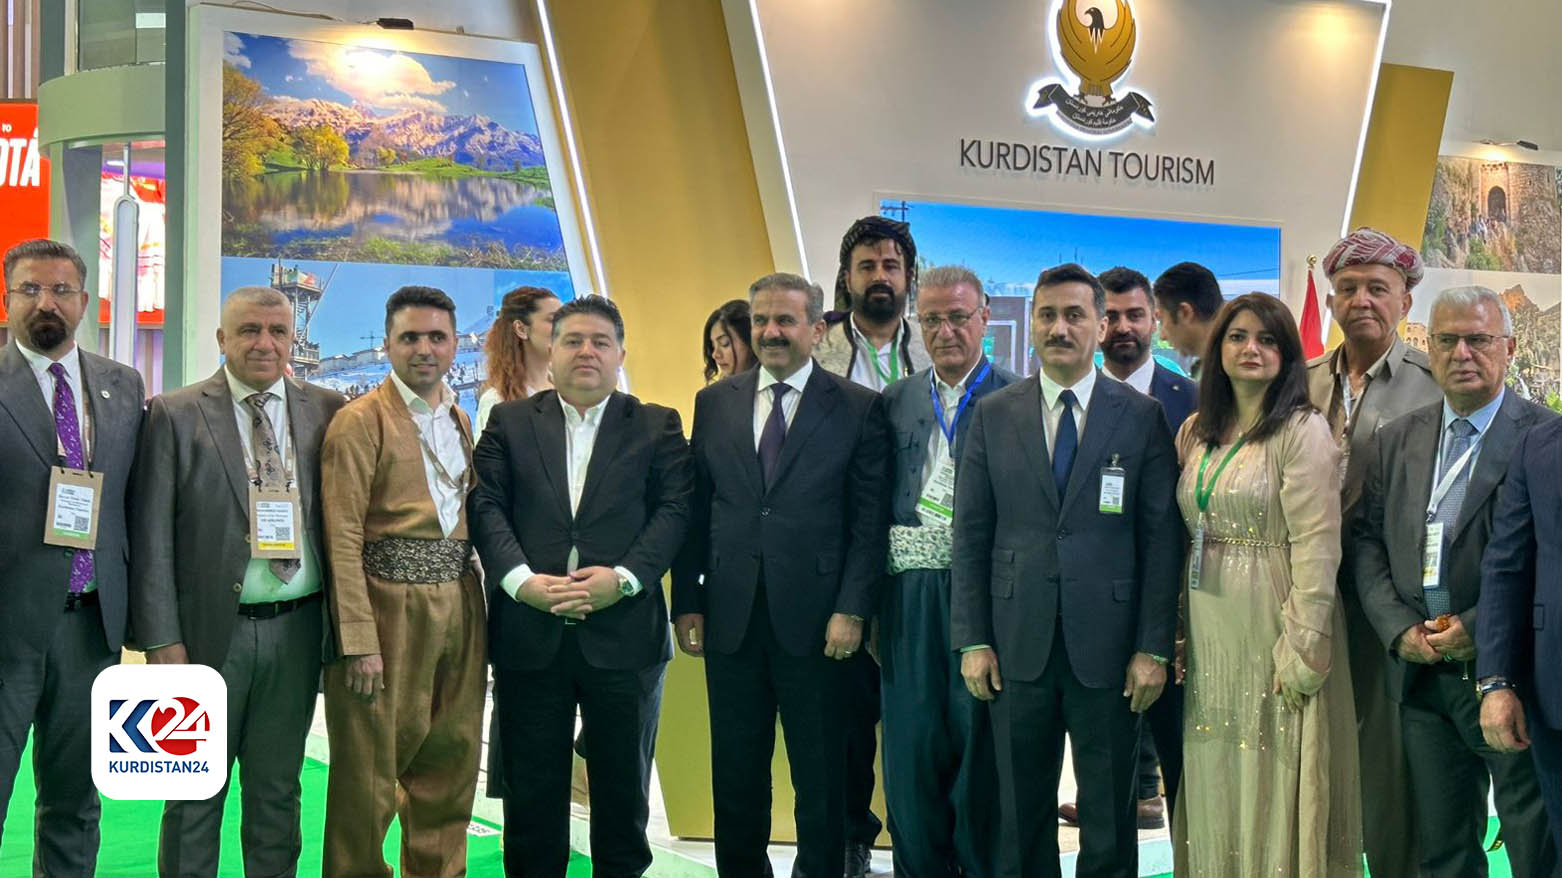 وفد سياحي كوردستاني يشارك في معرض "سوق السفر العربي" في دبي